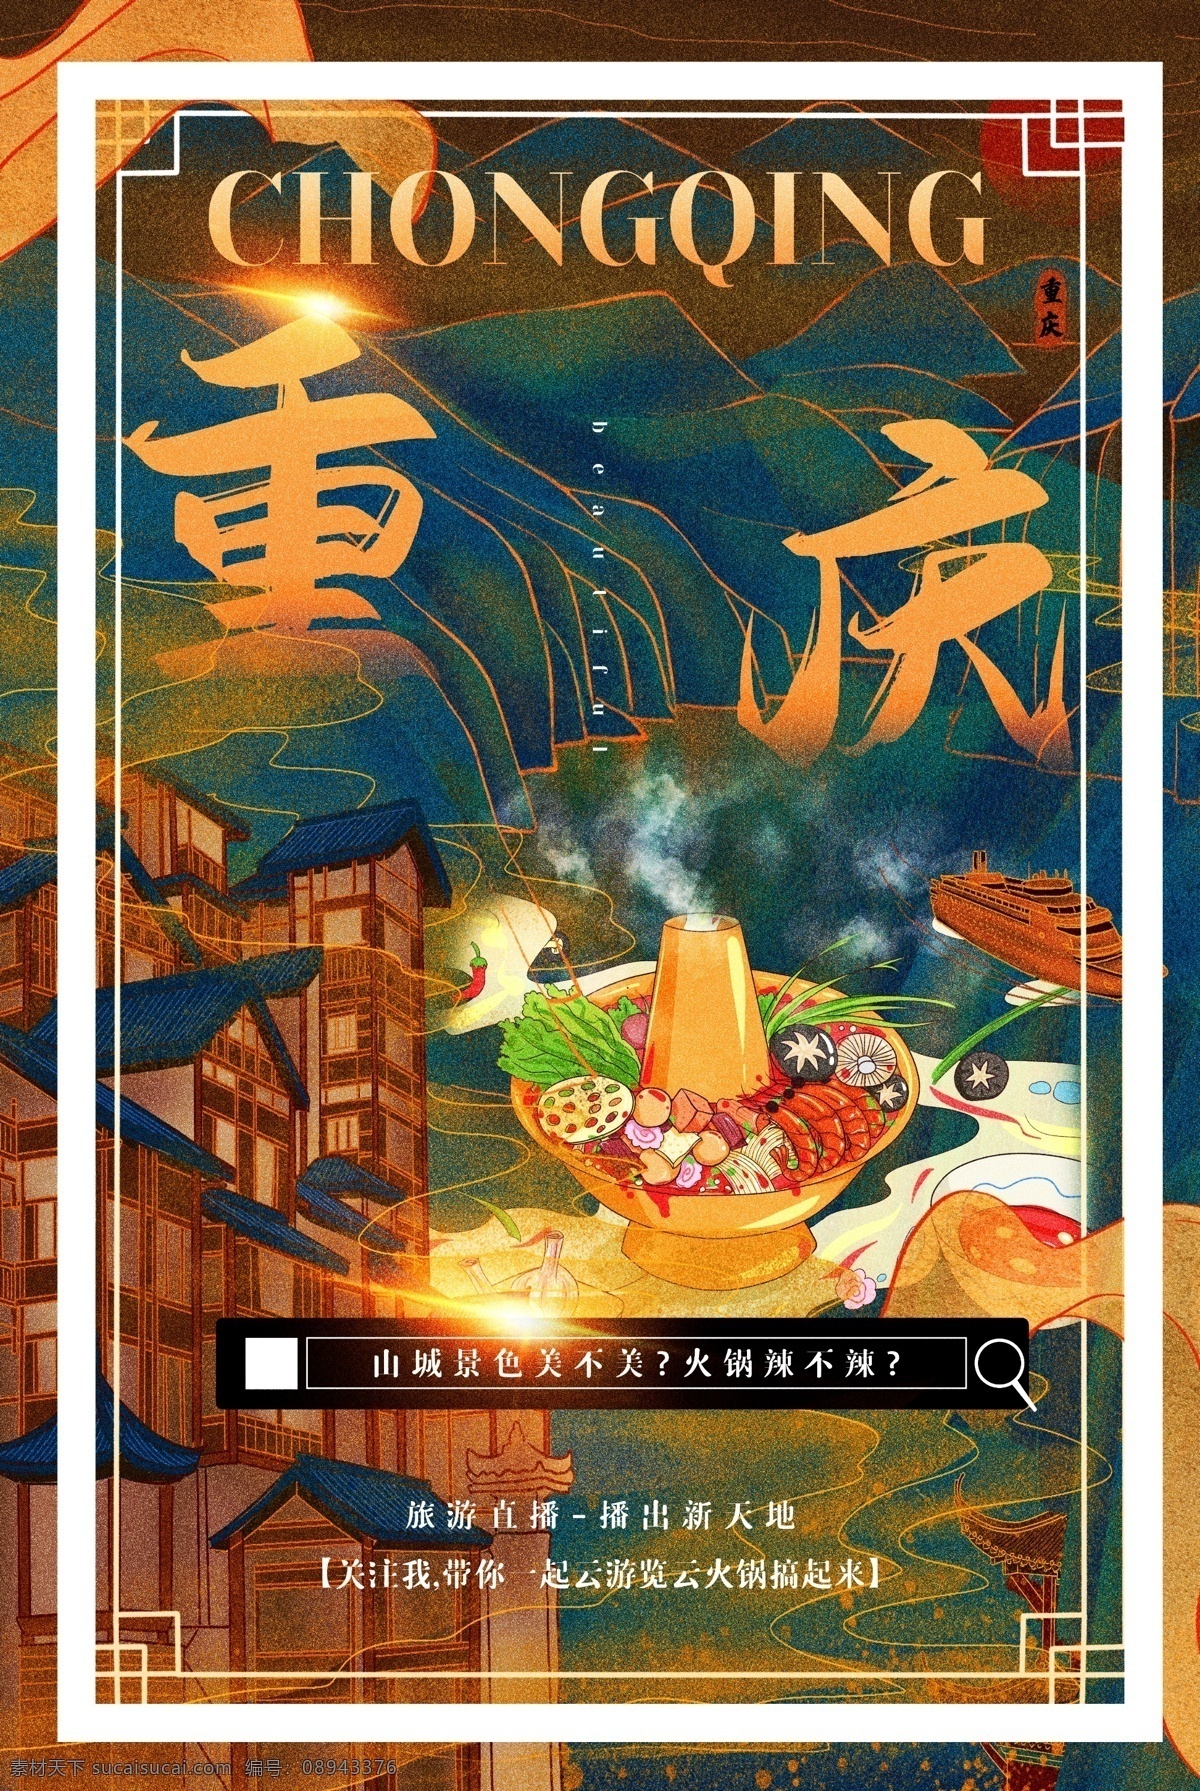 重庆 城市 景区 旅游 宣传海报 宣传 海报 旅游景点